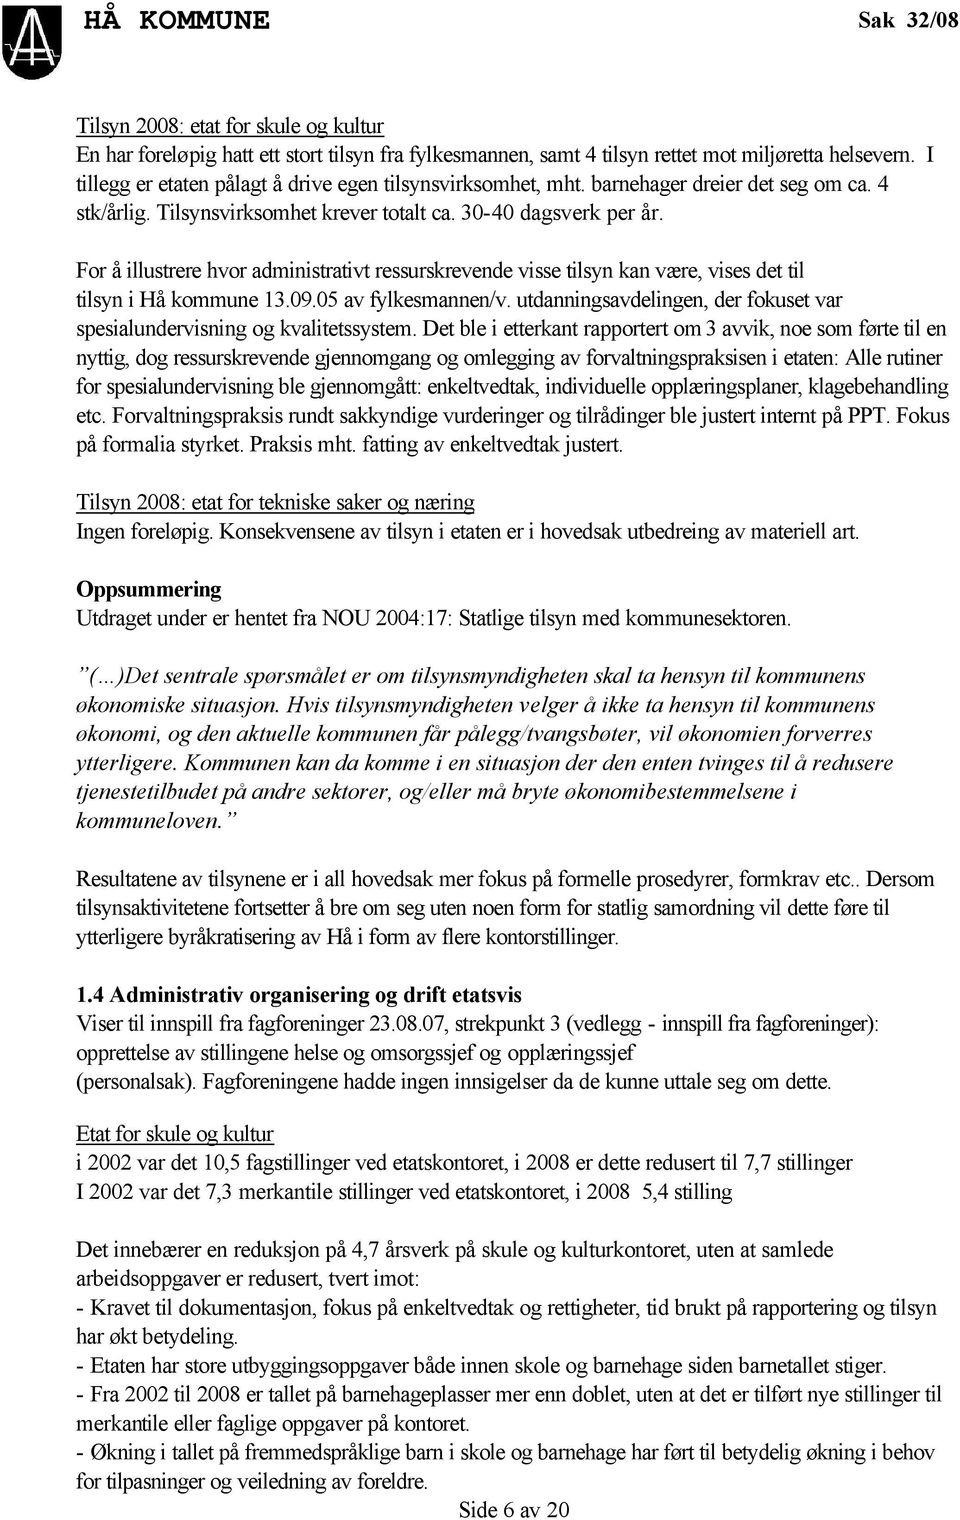 For å illustrere hvor administrativt ressurskrevende visse tilsyn kan være, vises det til tilsyn i Hå kommune 13.09.05 av fylkesmannen/v.